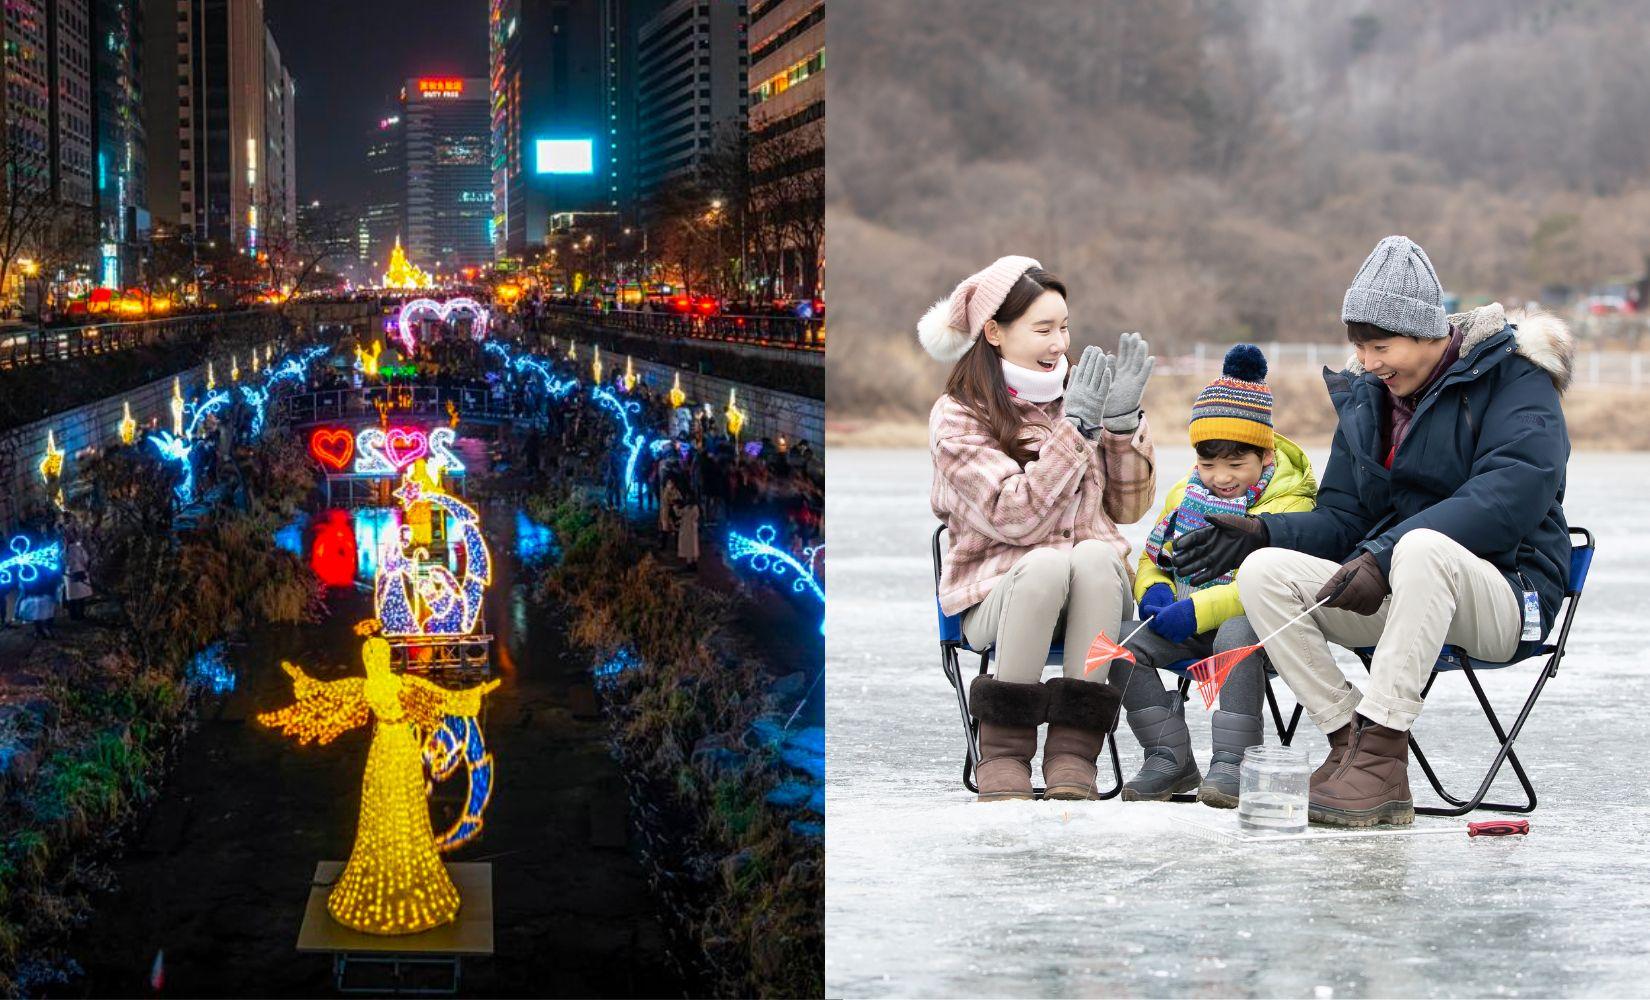 Top 8 lễ hội mùa đông đặc sắc nhất ở Hàn 2023 - 2024 bạn không nên bỏ lỡ